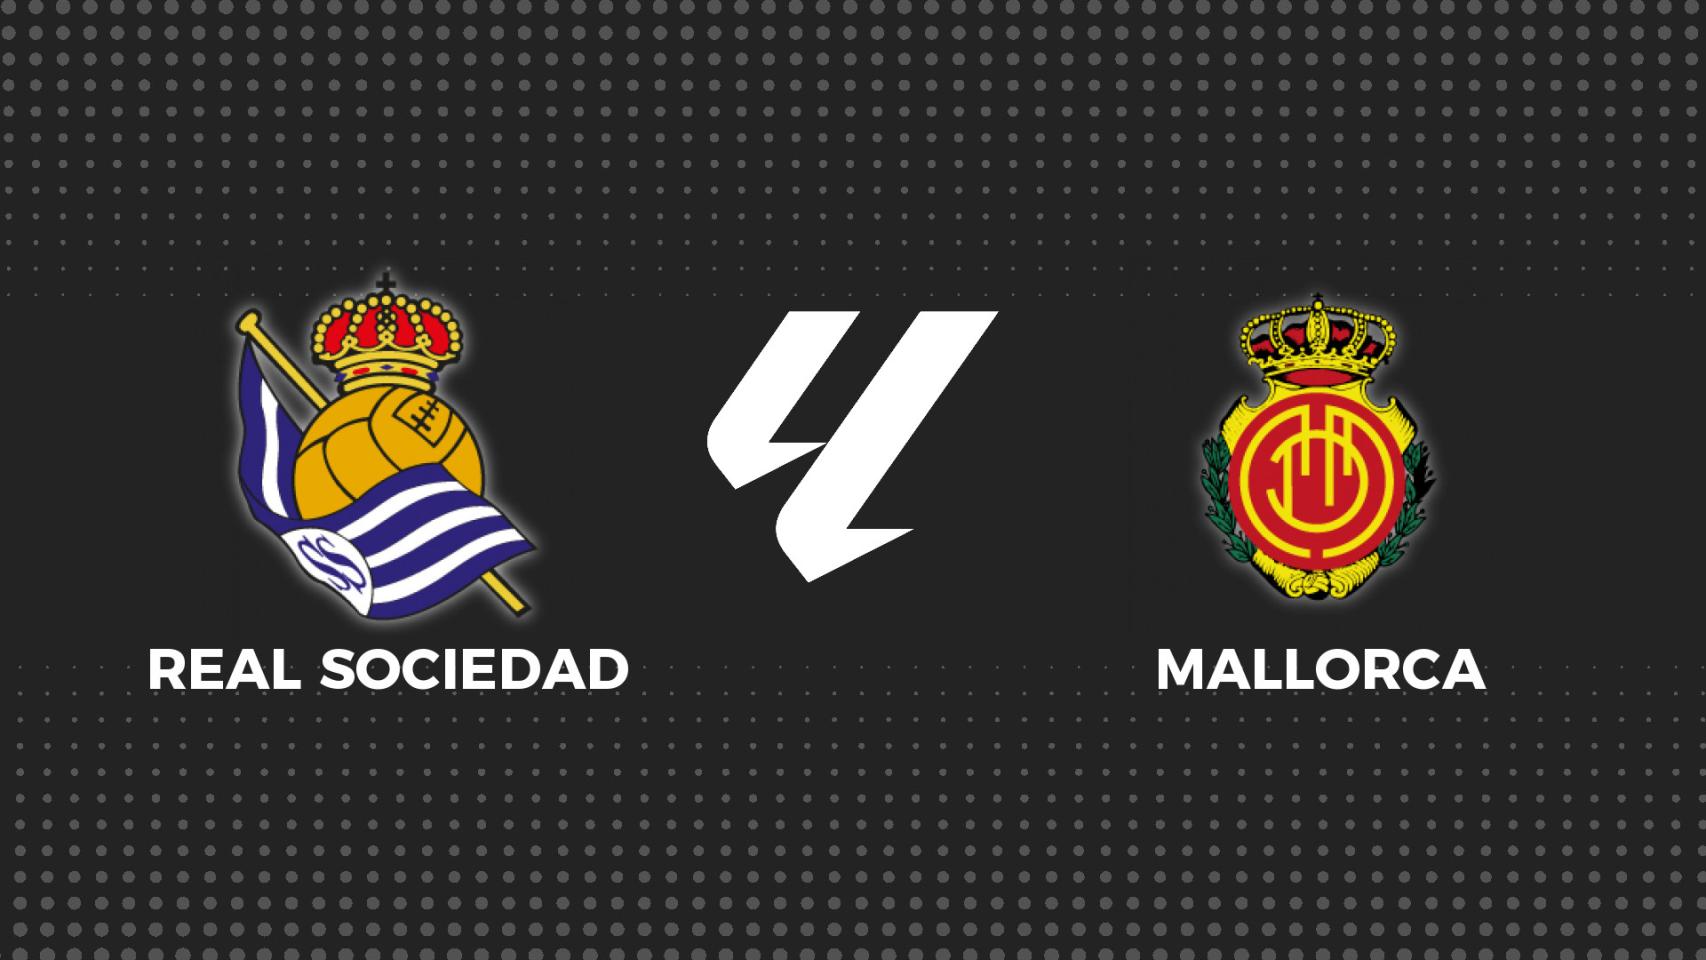 Real Sociedad - Mallorca, fútbol en directo